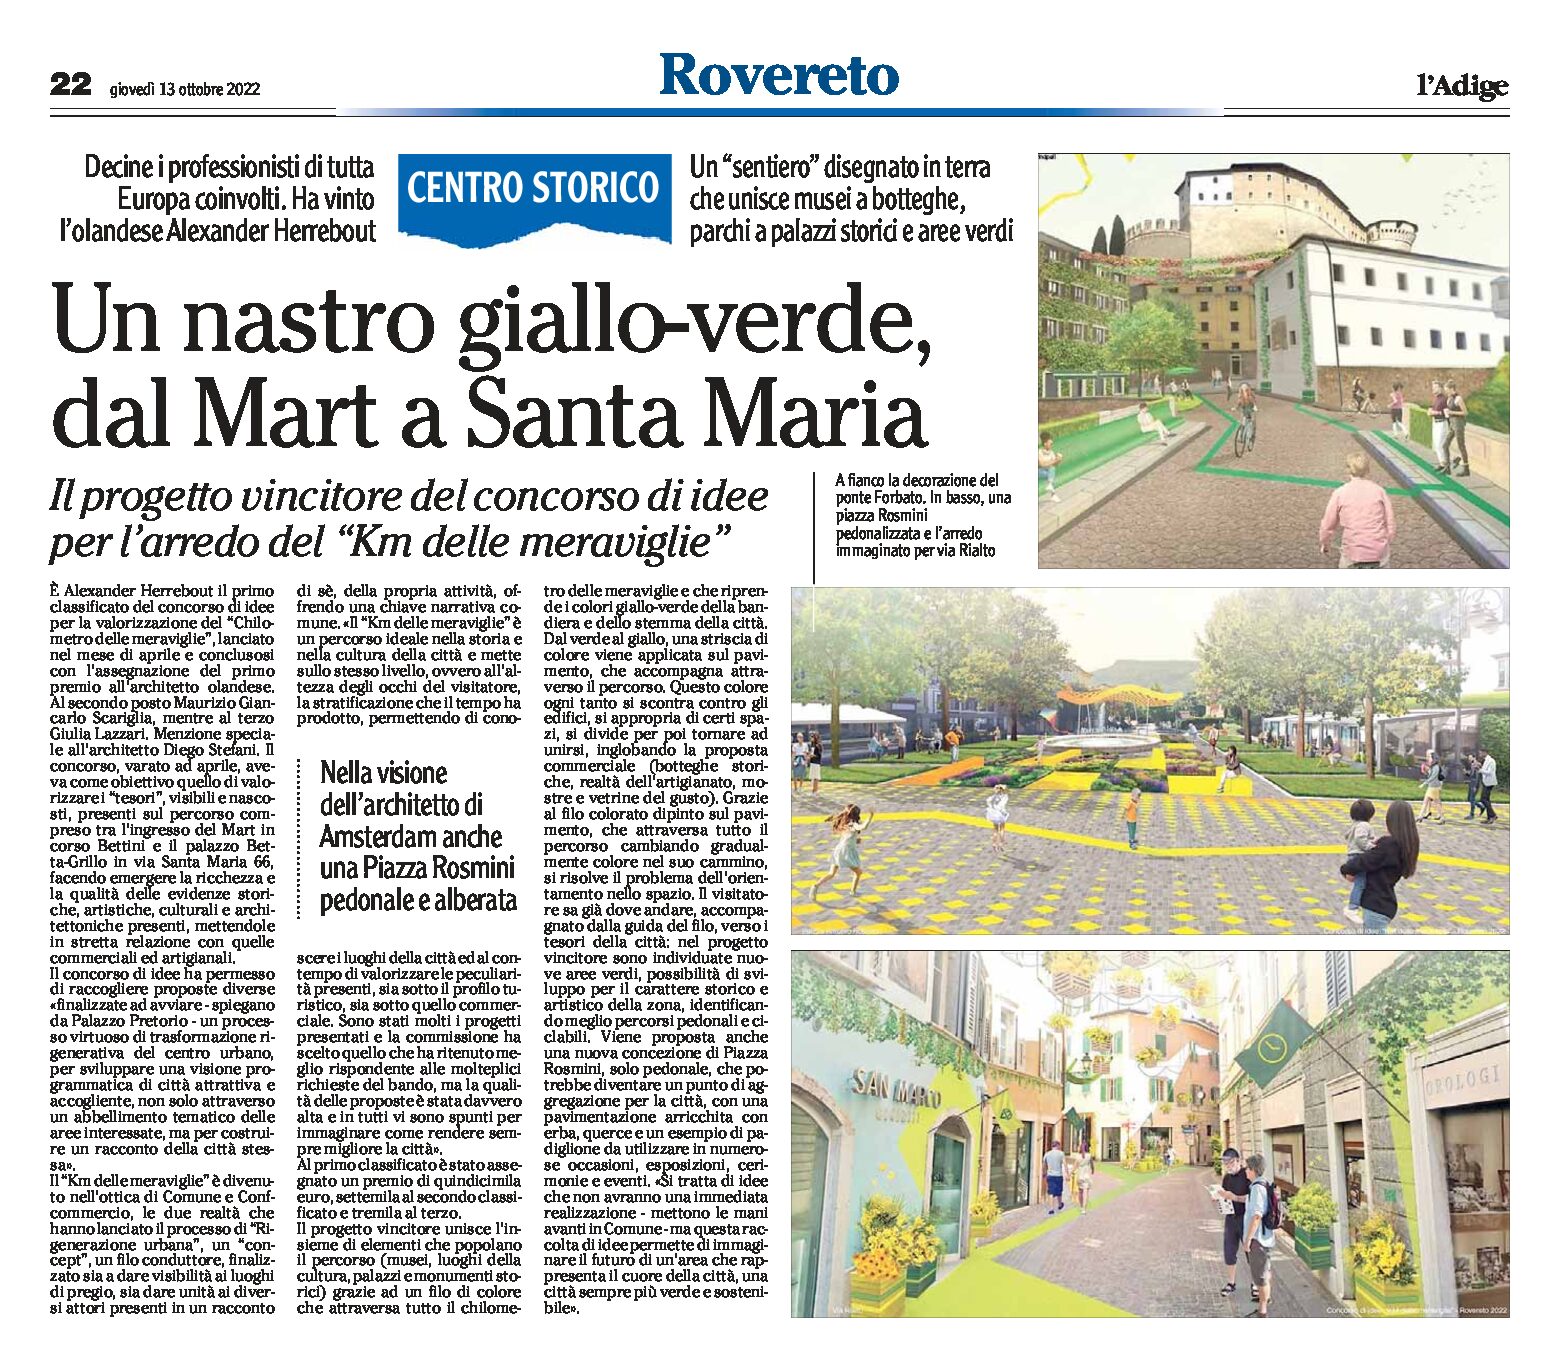 Rovereto, centro storico: un nastro giallo-verde dal Mart a Santa Maria